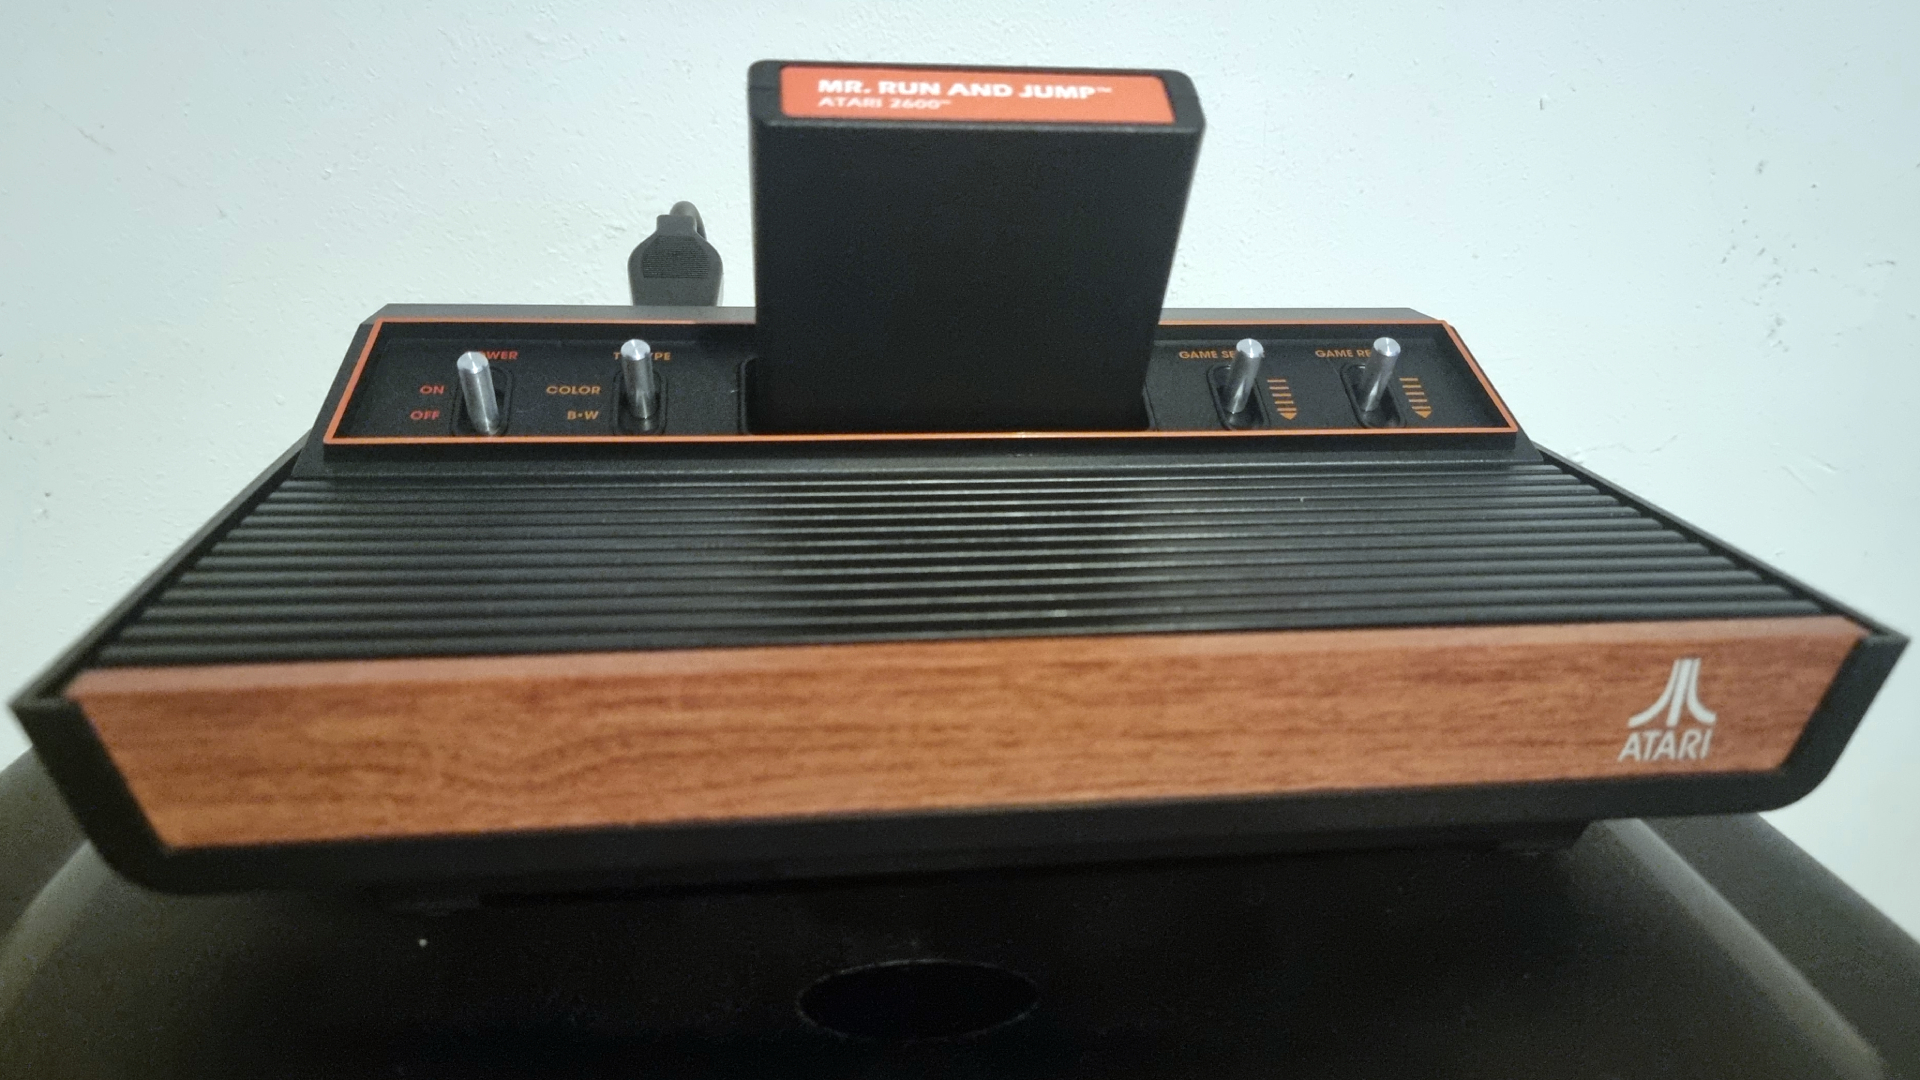 Atari 2600+ sees its future in retro gaming